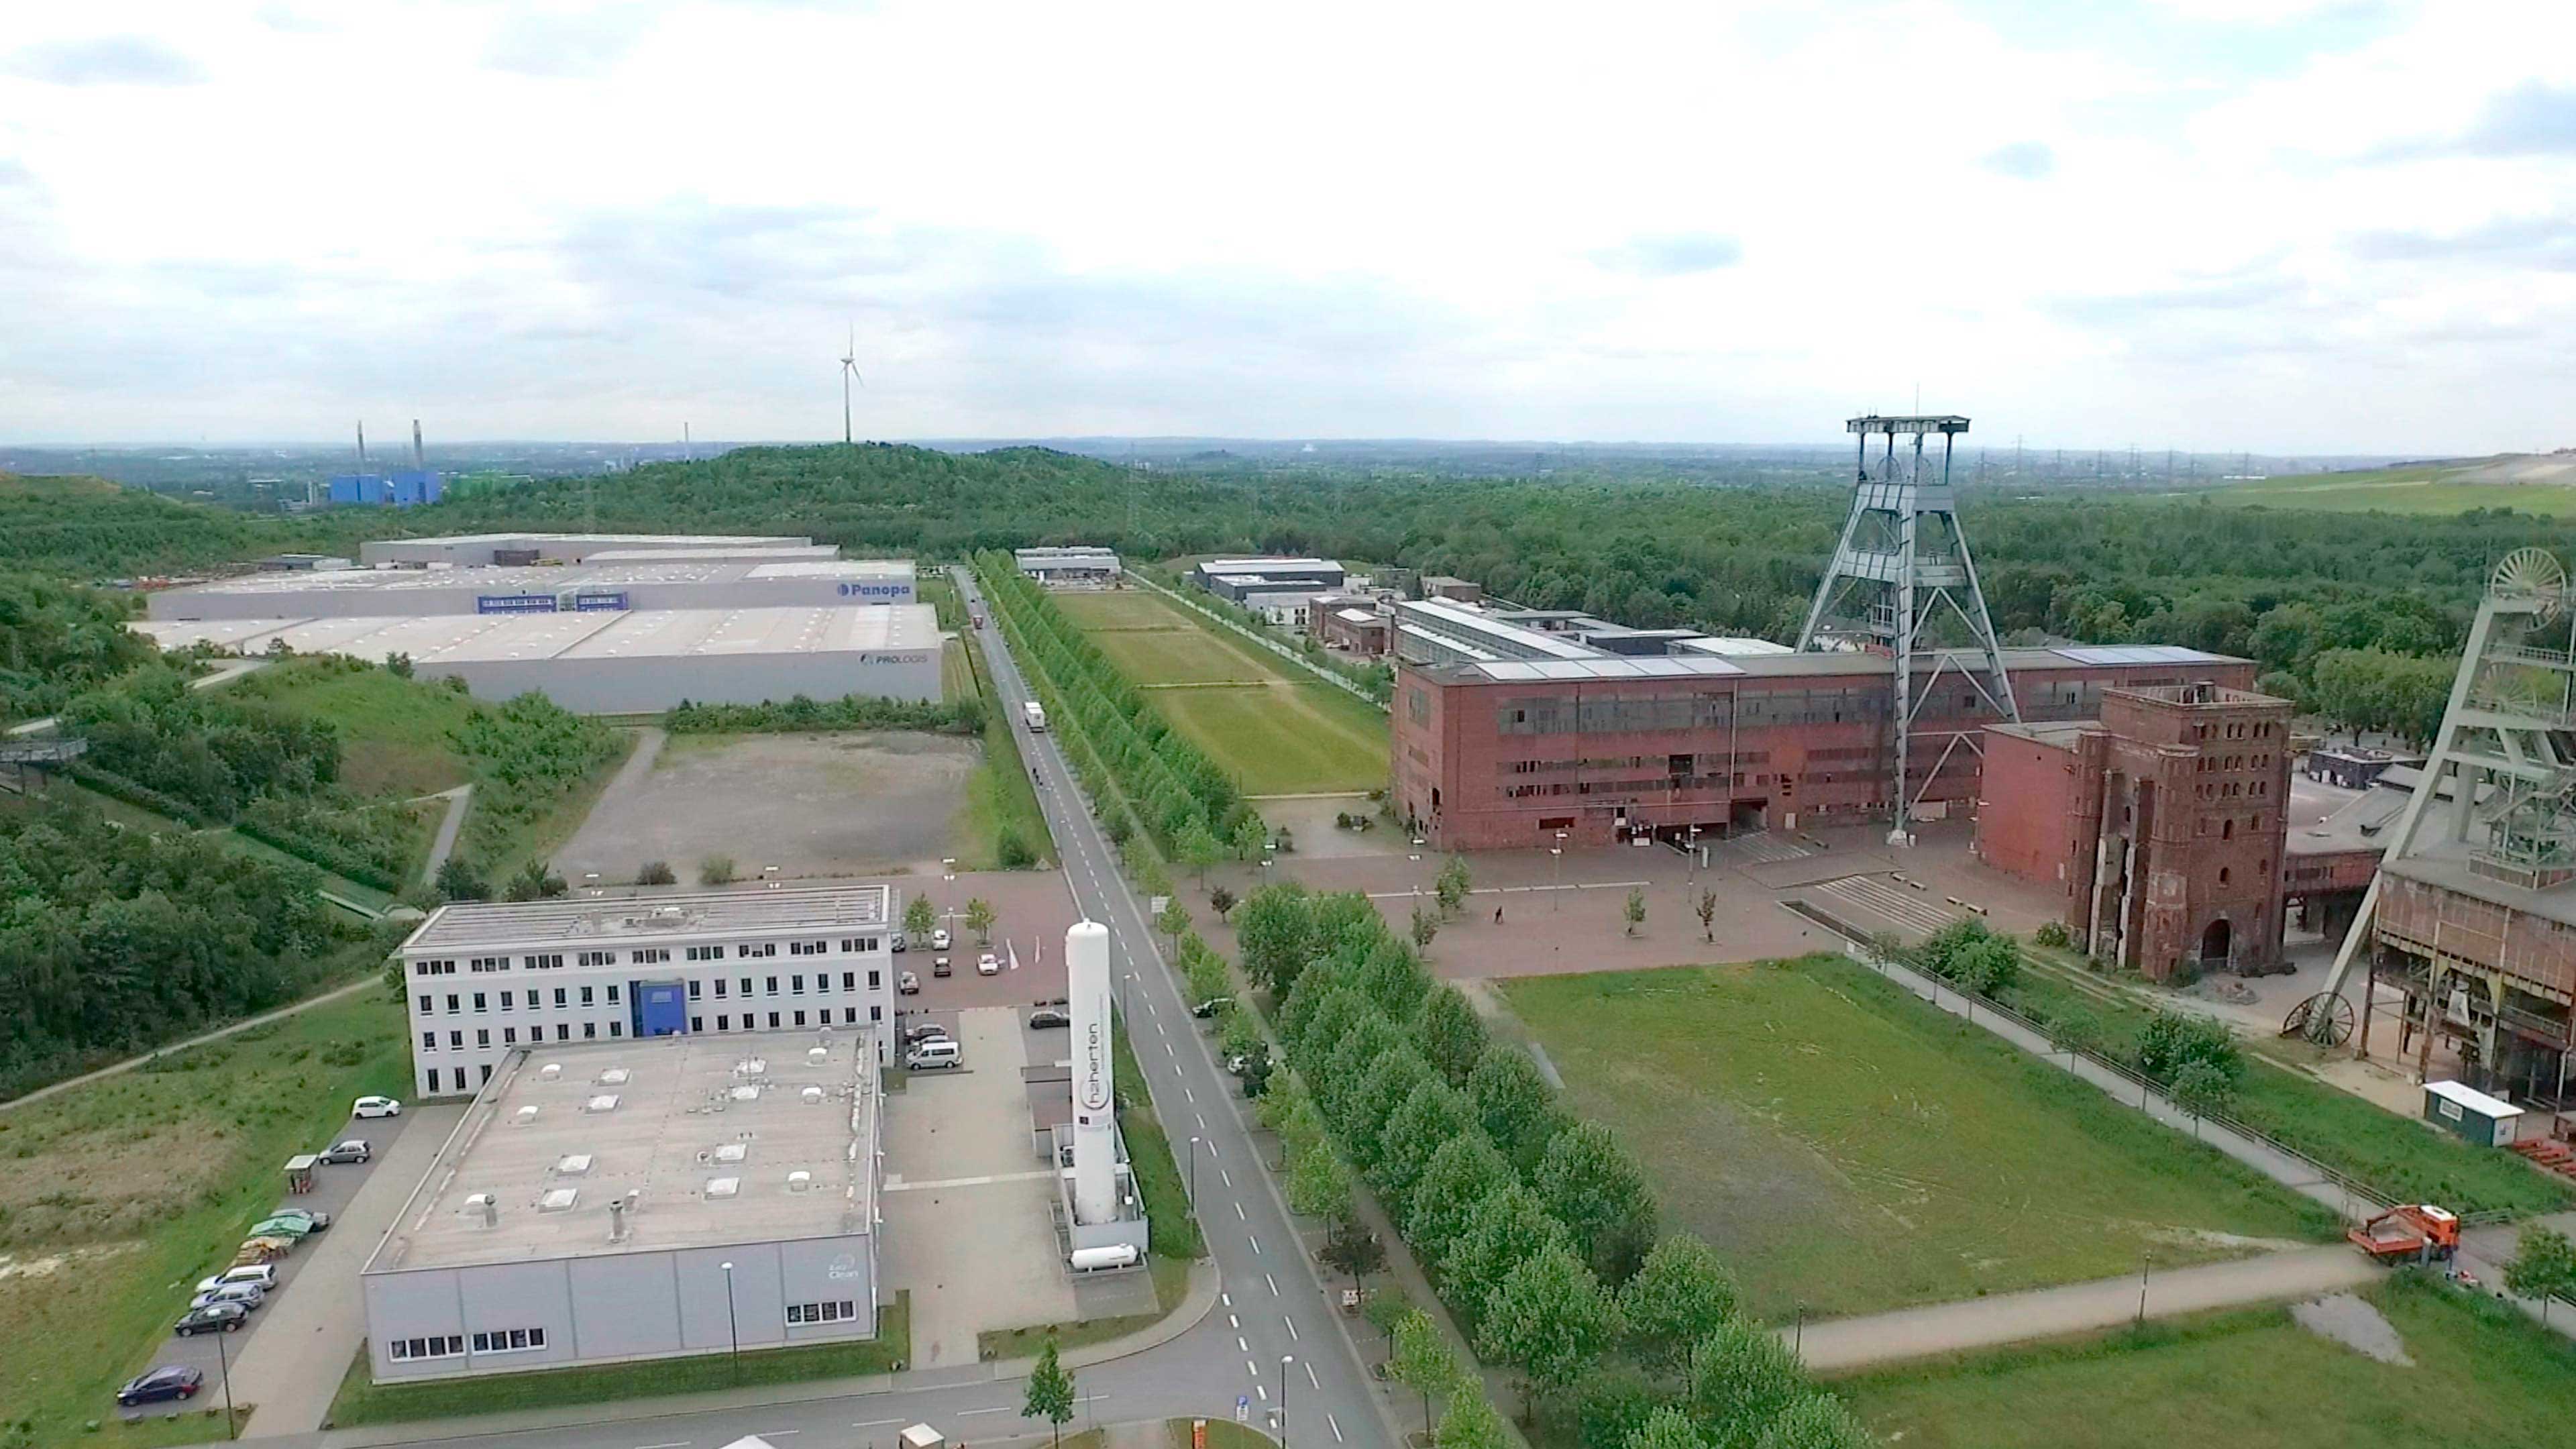 Luftbild eines Industriegebietes